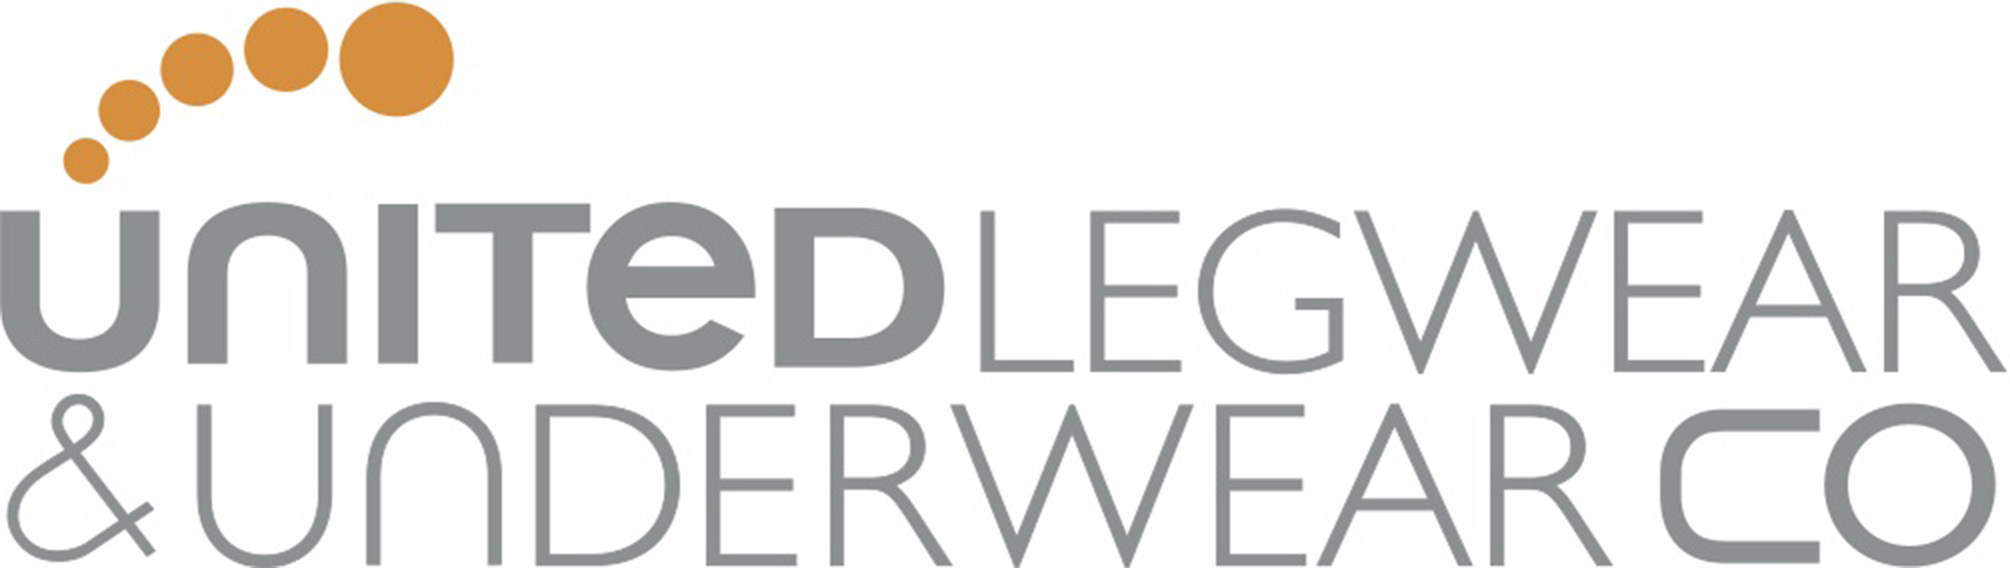 United Legwear & Apparel Co logo